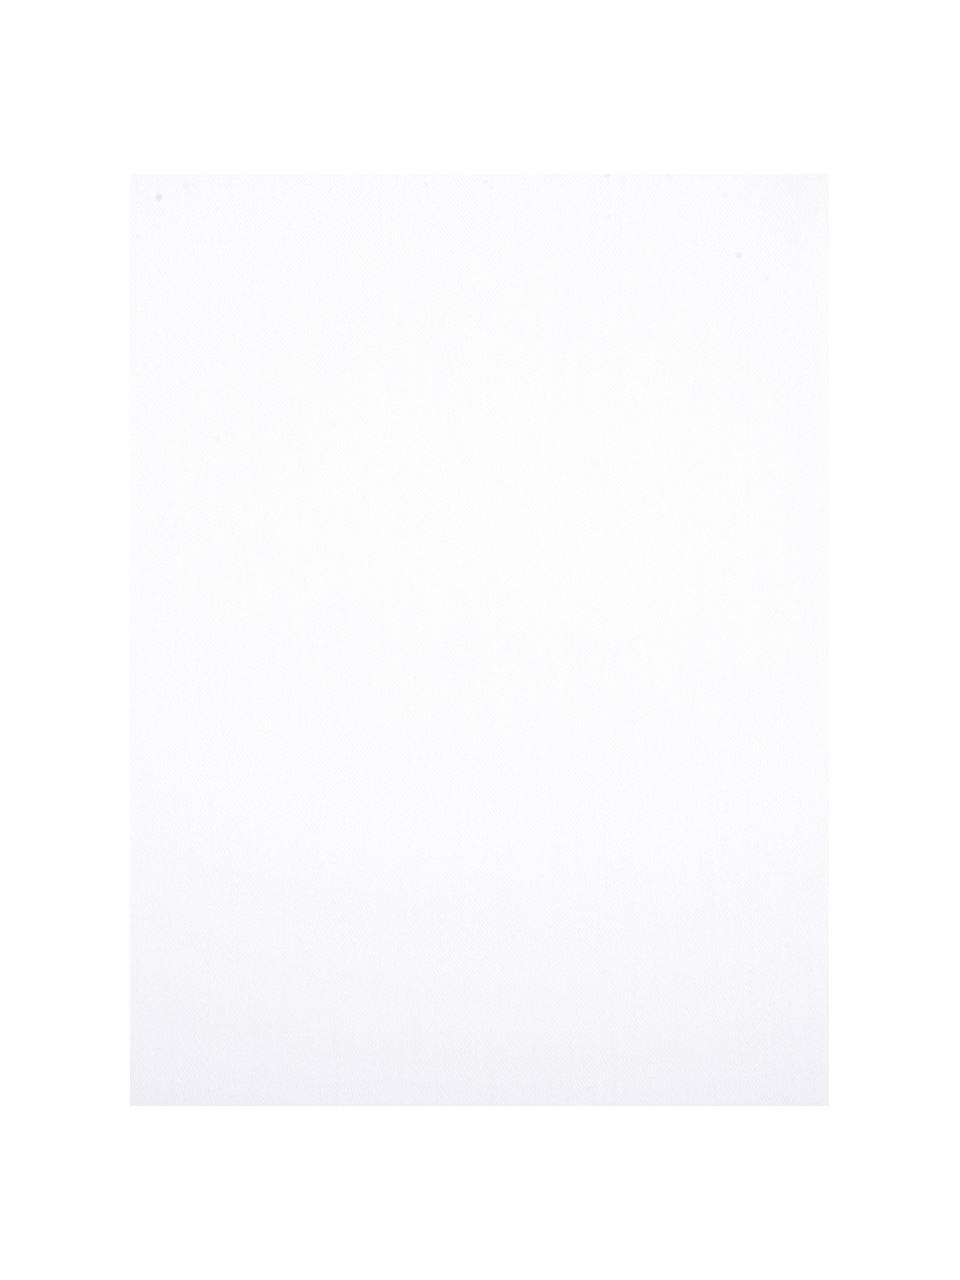 Biancheria da letto in raso di cotone bianco Comfort, Tessuto: raso Densità del filo 250, Bianco, 240 x 300 cm + 2 federe 50 x 80 cm